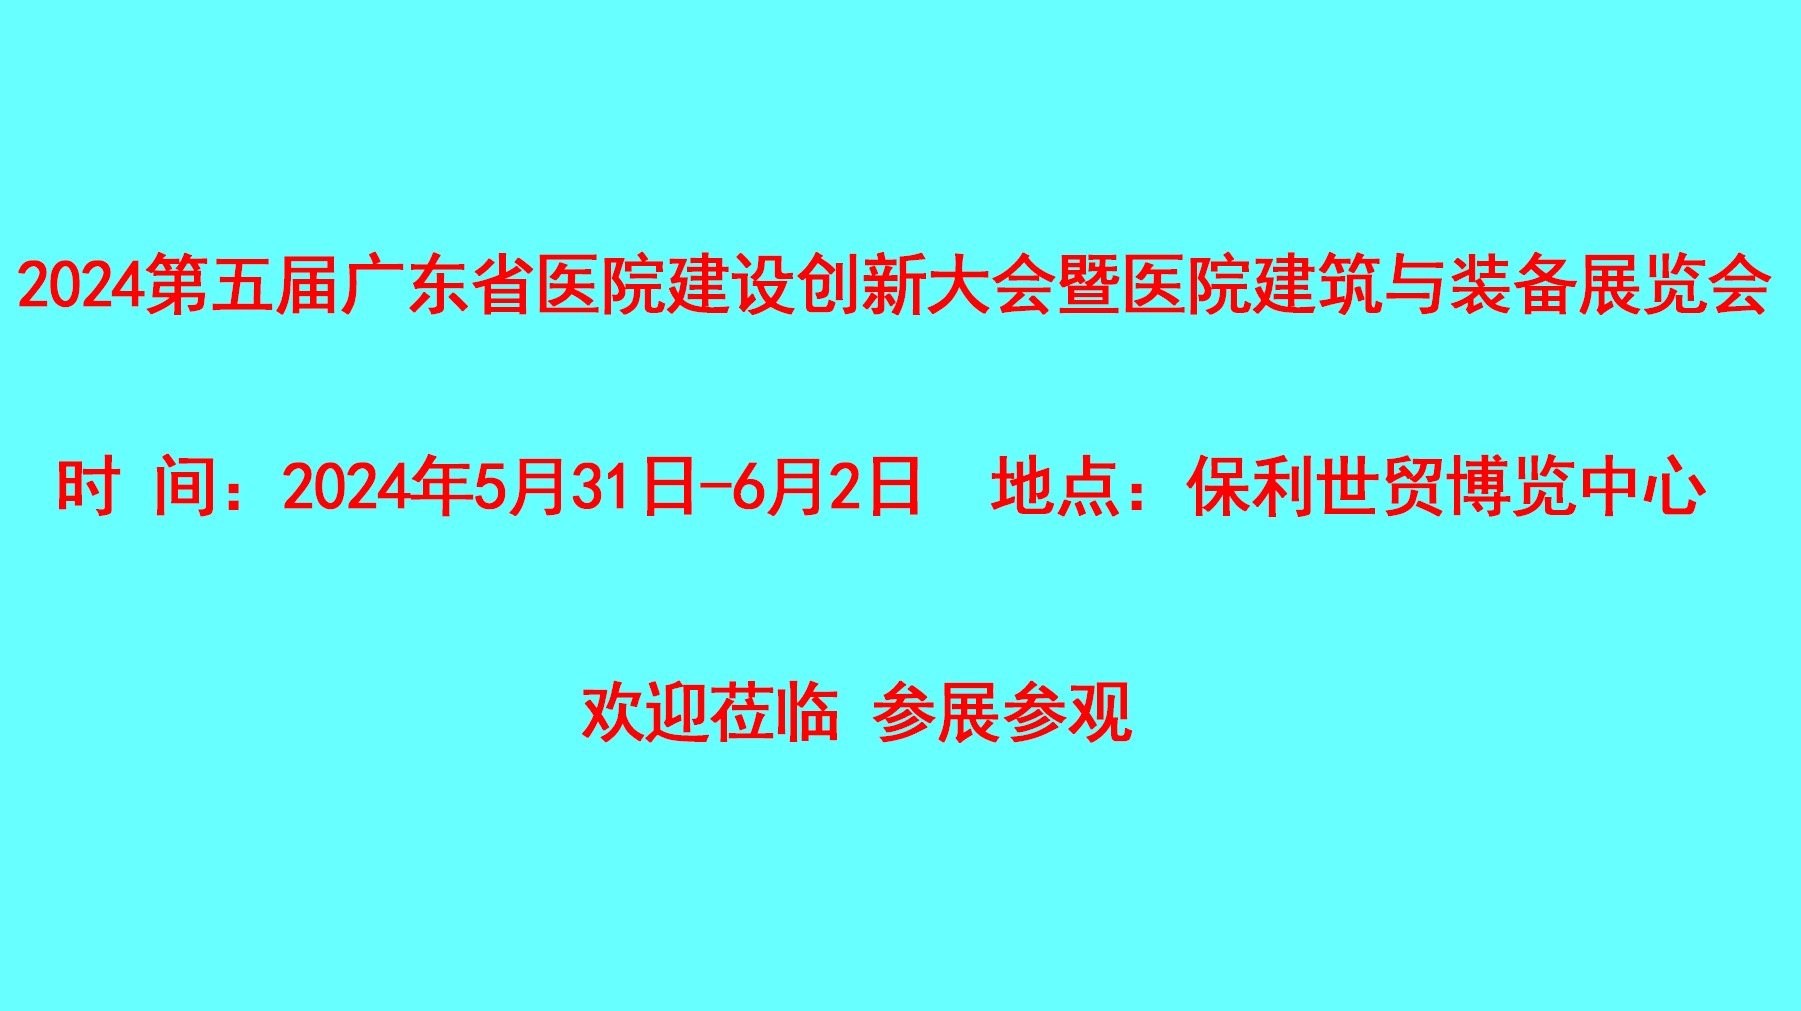 2024广东省医院建设创新大会暨医院建筑与装备展览会